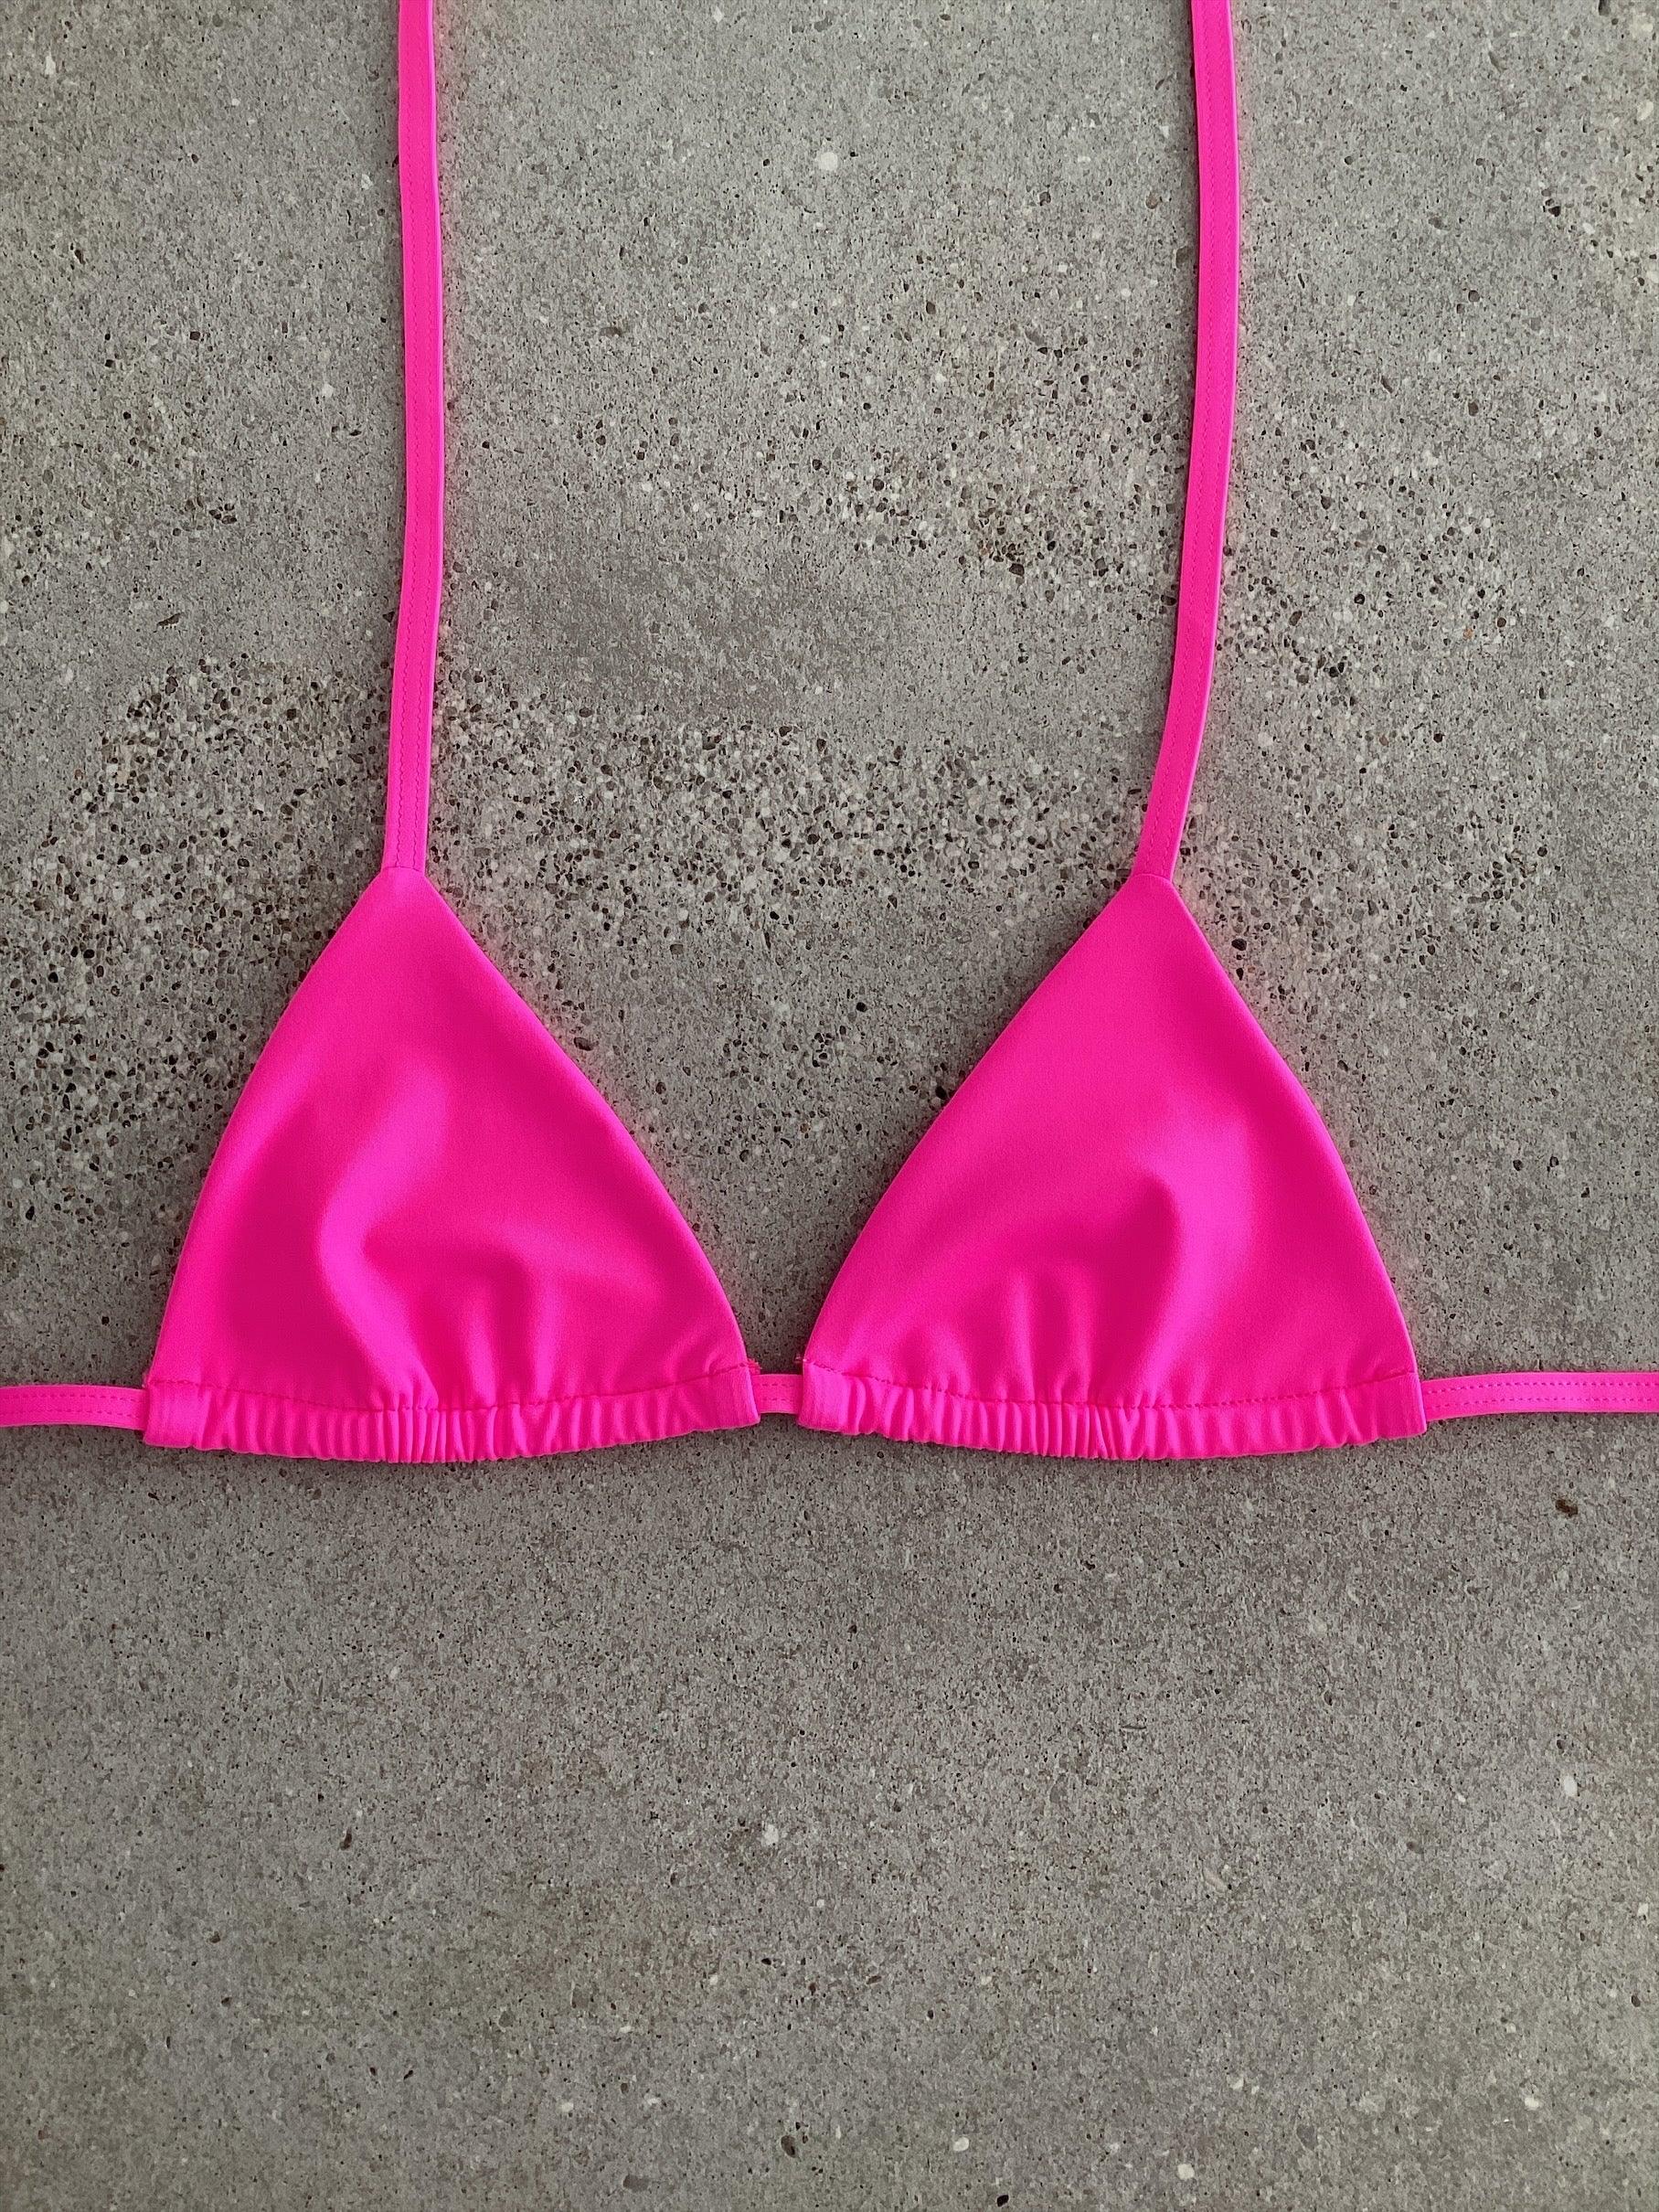 Fizz Pop Pink Bikini Top - Kristen Lonie Swimwear